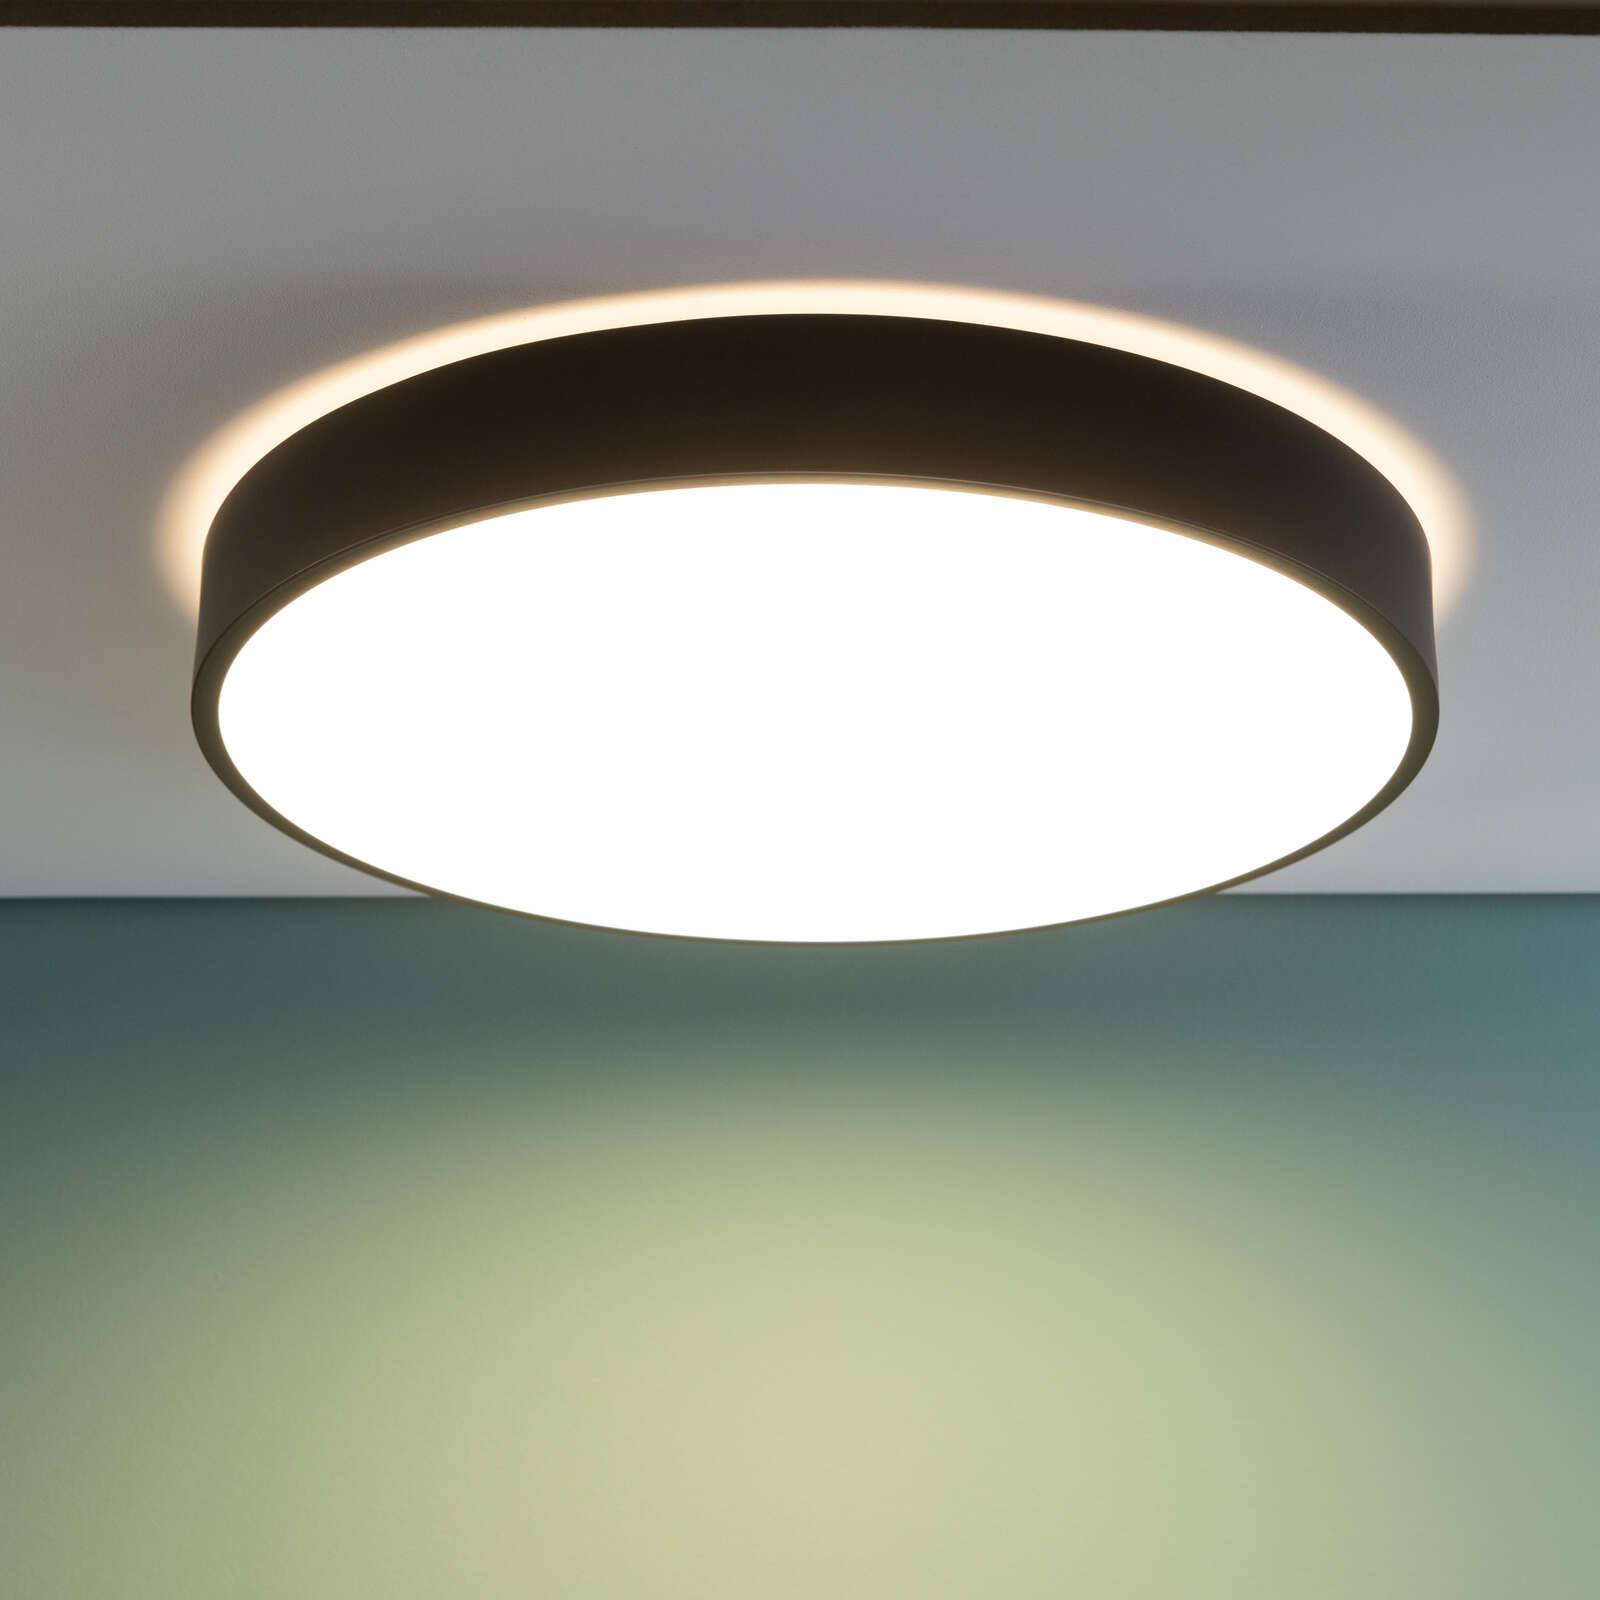             Kunststof plafondlamp - Niklas 8 - Zwart
        